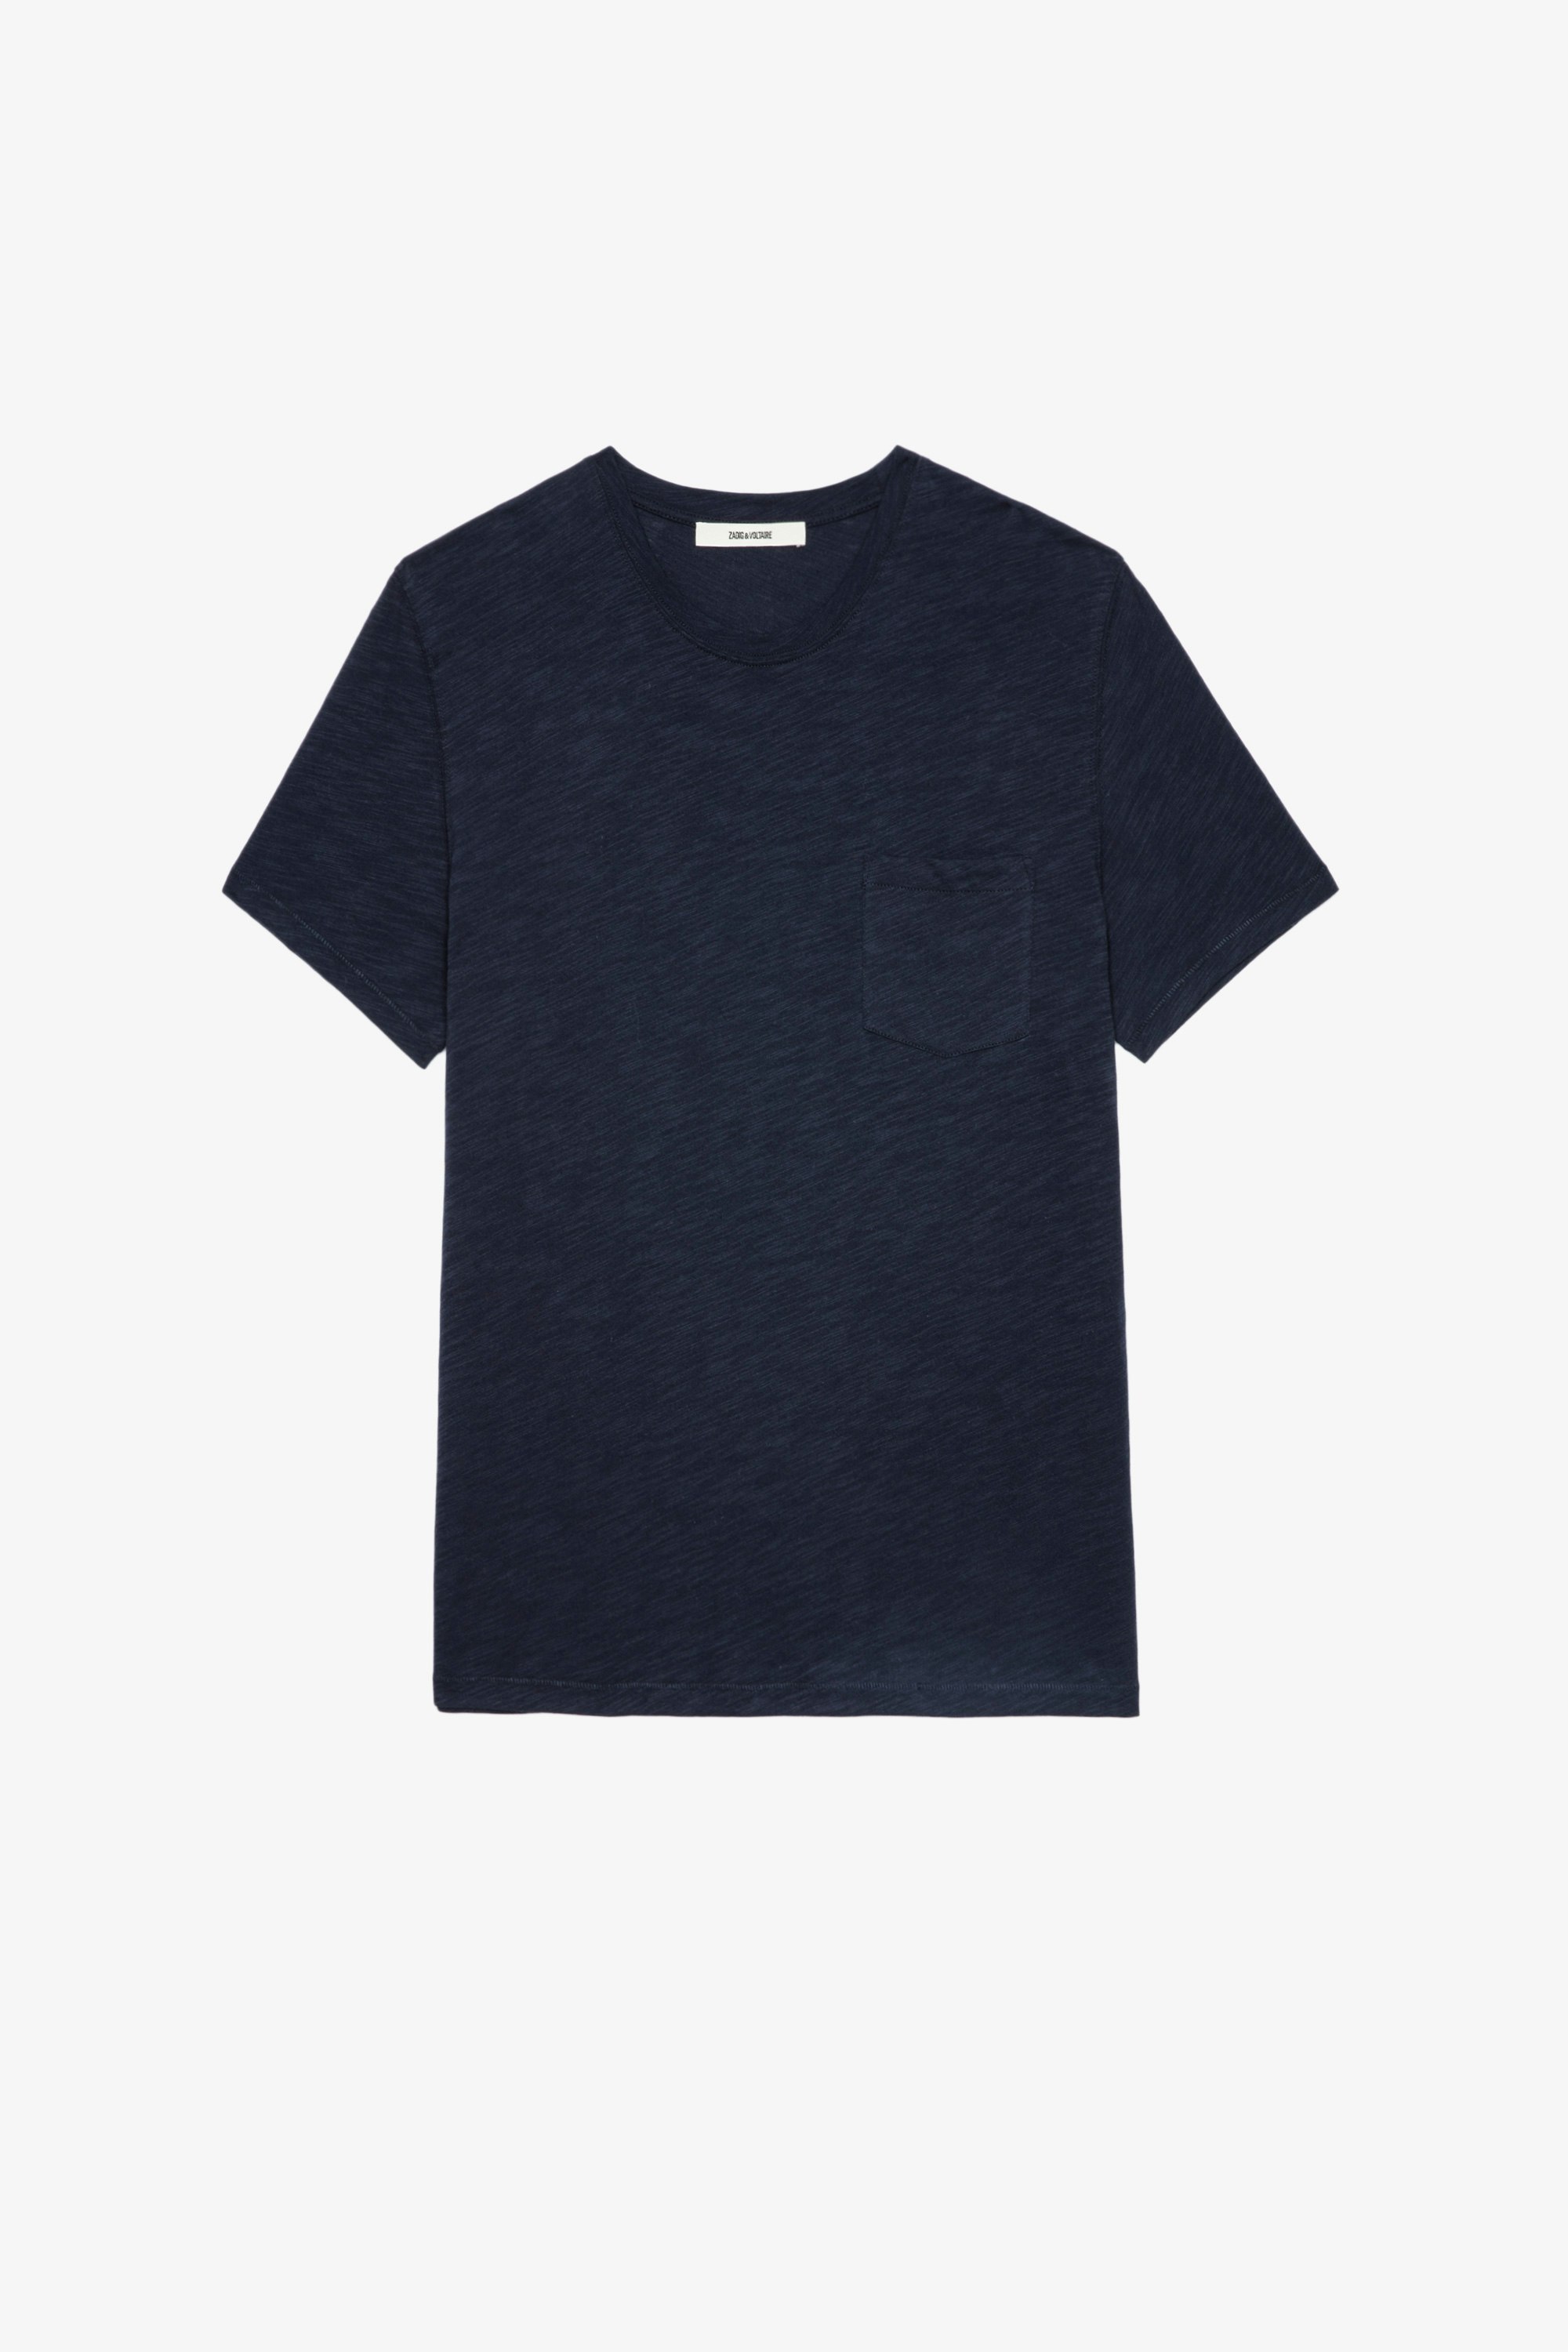 T-Shirt Stockholm Geflammt Herren-T-Shirt aus marineblauer, geflammter Baumwolle mit aufgesetzter Tasche und aufgeflocktem Totenkopf auf dem Rücken